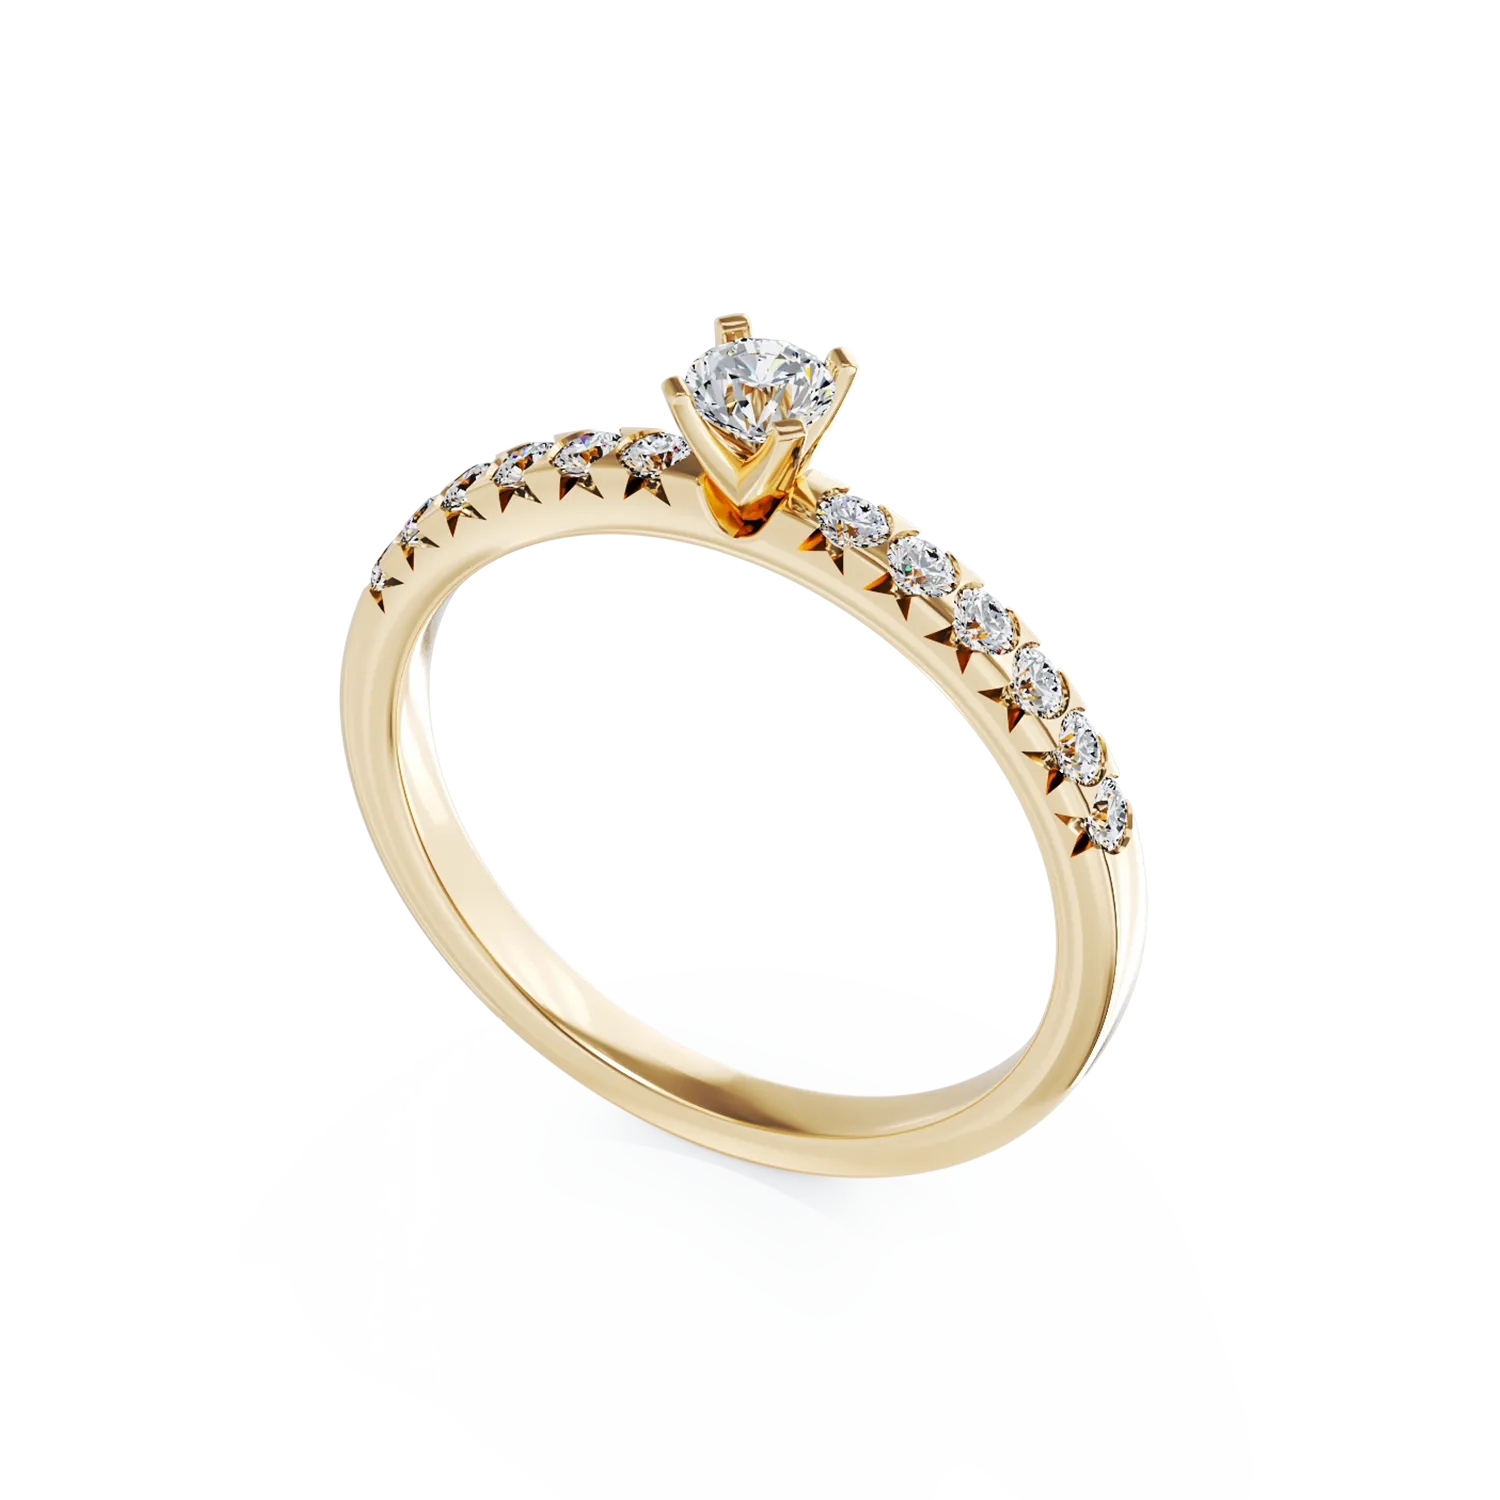 Eljegyzési gyűrű 18K-os sárga aranyból 0,15ct gyémánttal és 0,28ct gyémántokkal. Gramm: 2,6